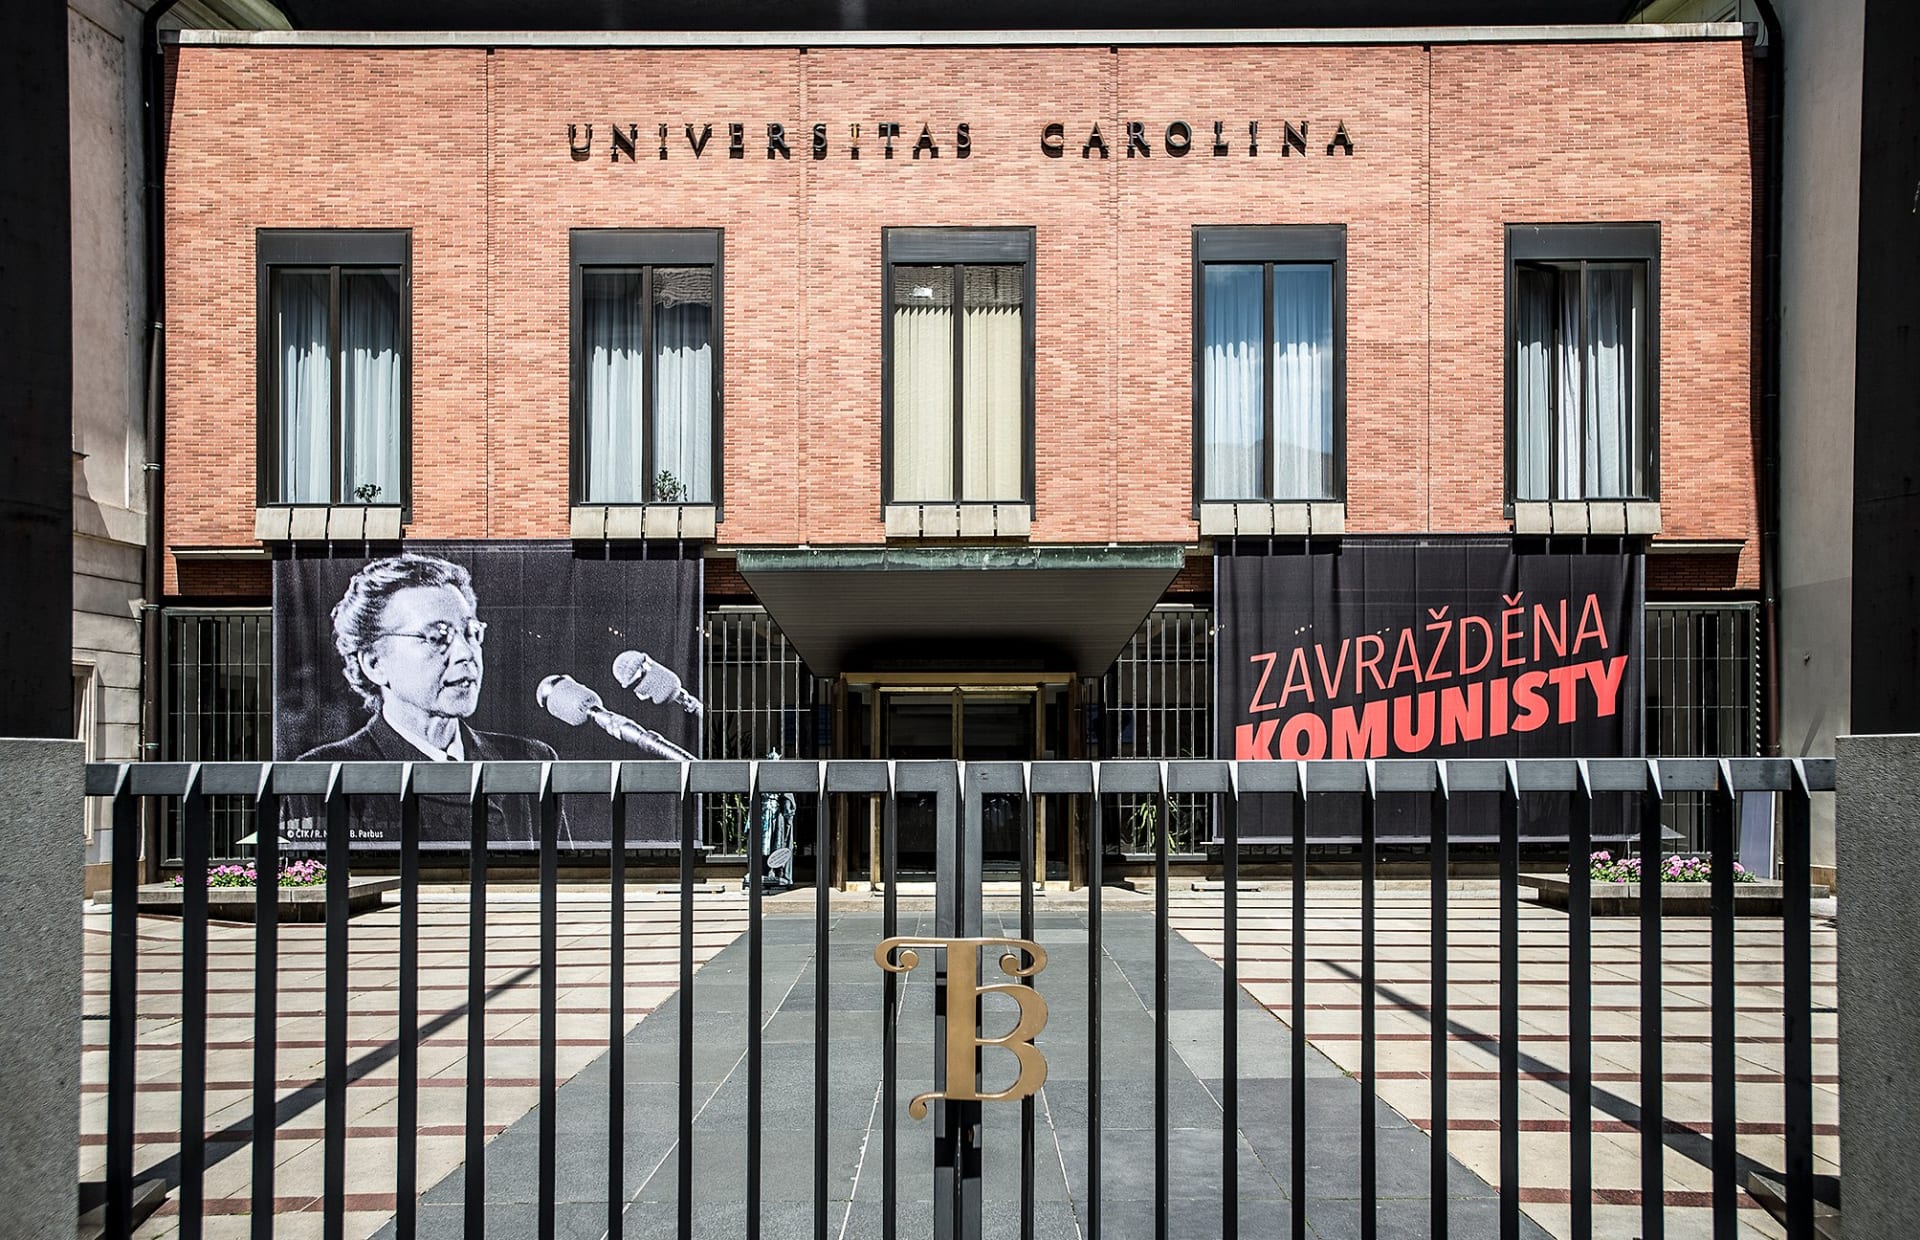 Plakát iniciativy Milada 70: Zavražděna komunisty visí například na budovách Univerzity Karlovy.